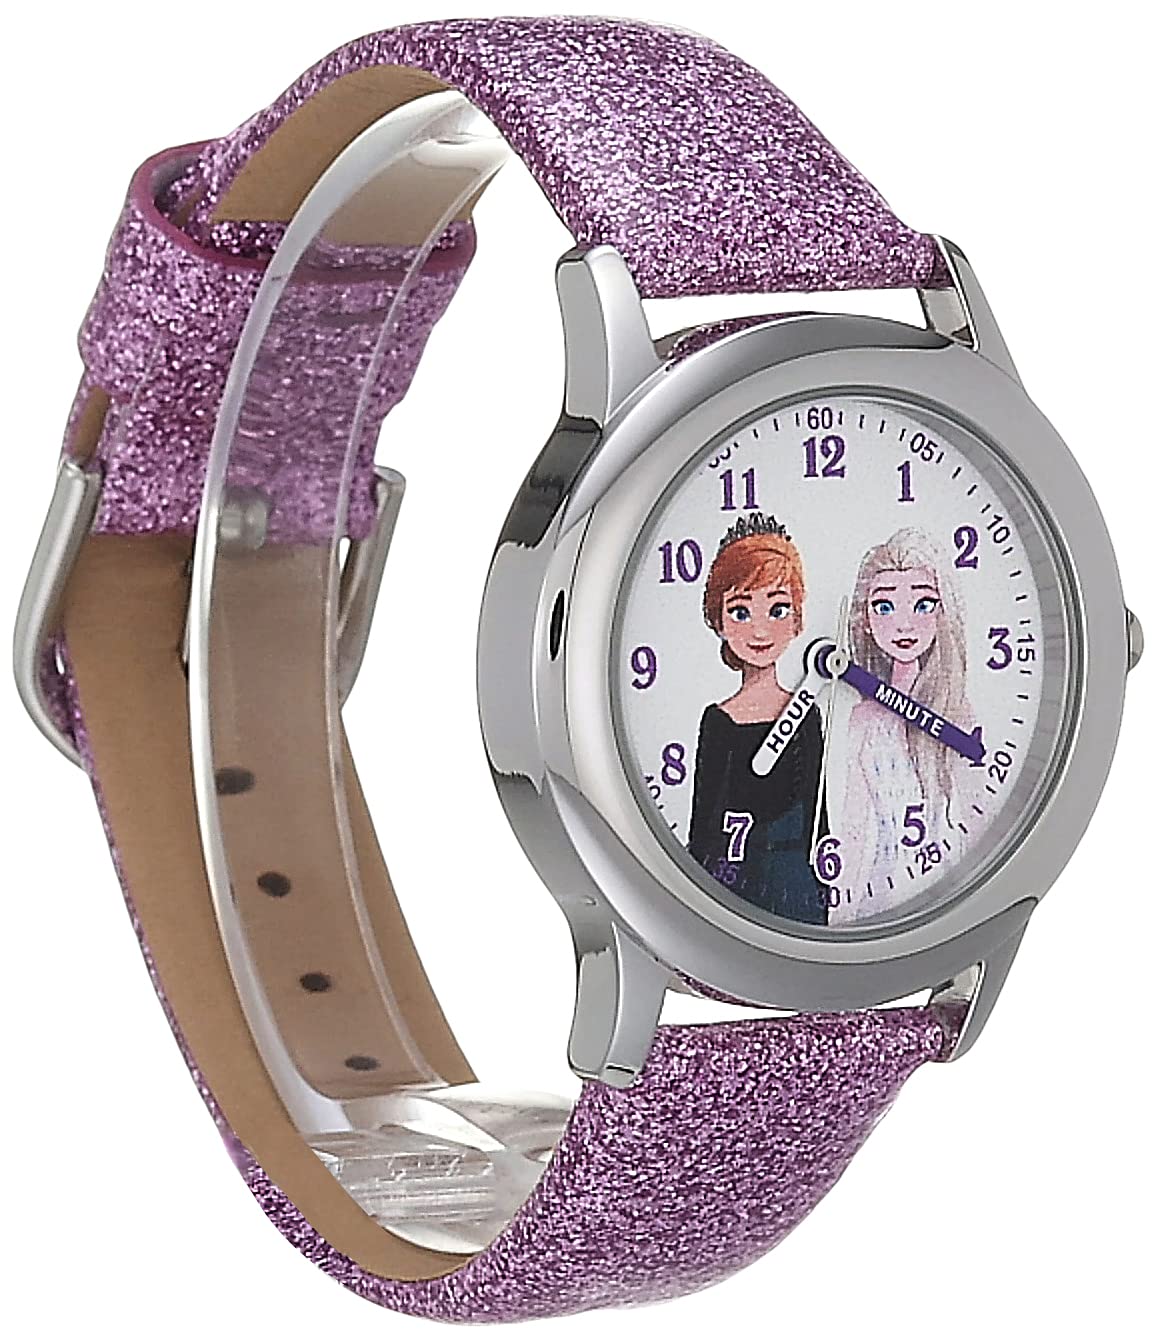 Disney Frozen Kids' Stainless Steel Time Teacher Analog Quartz Strap Watch, Purple